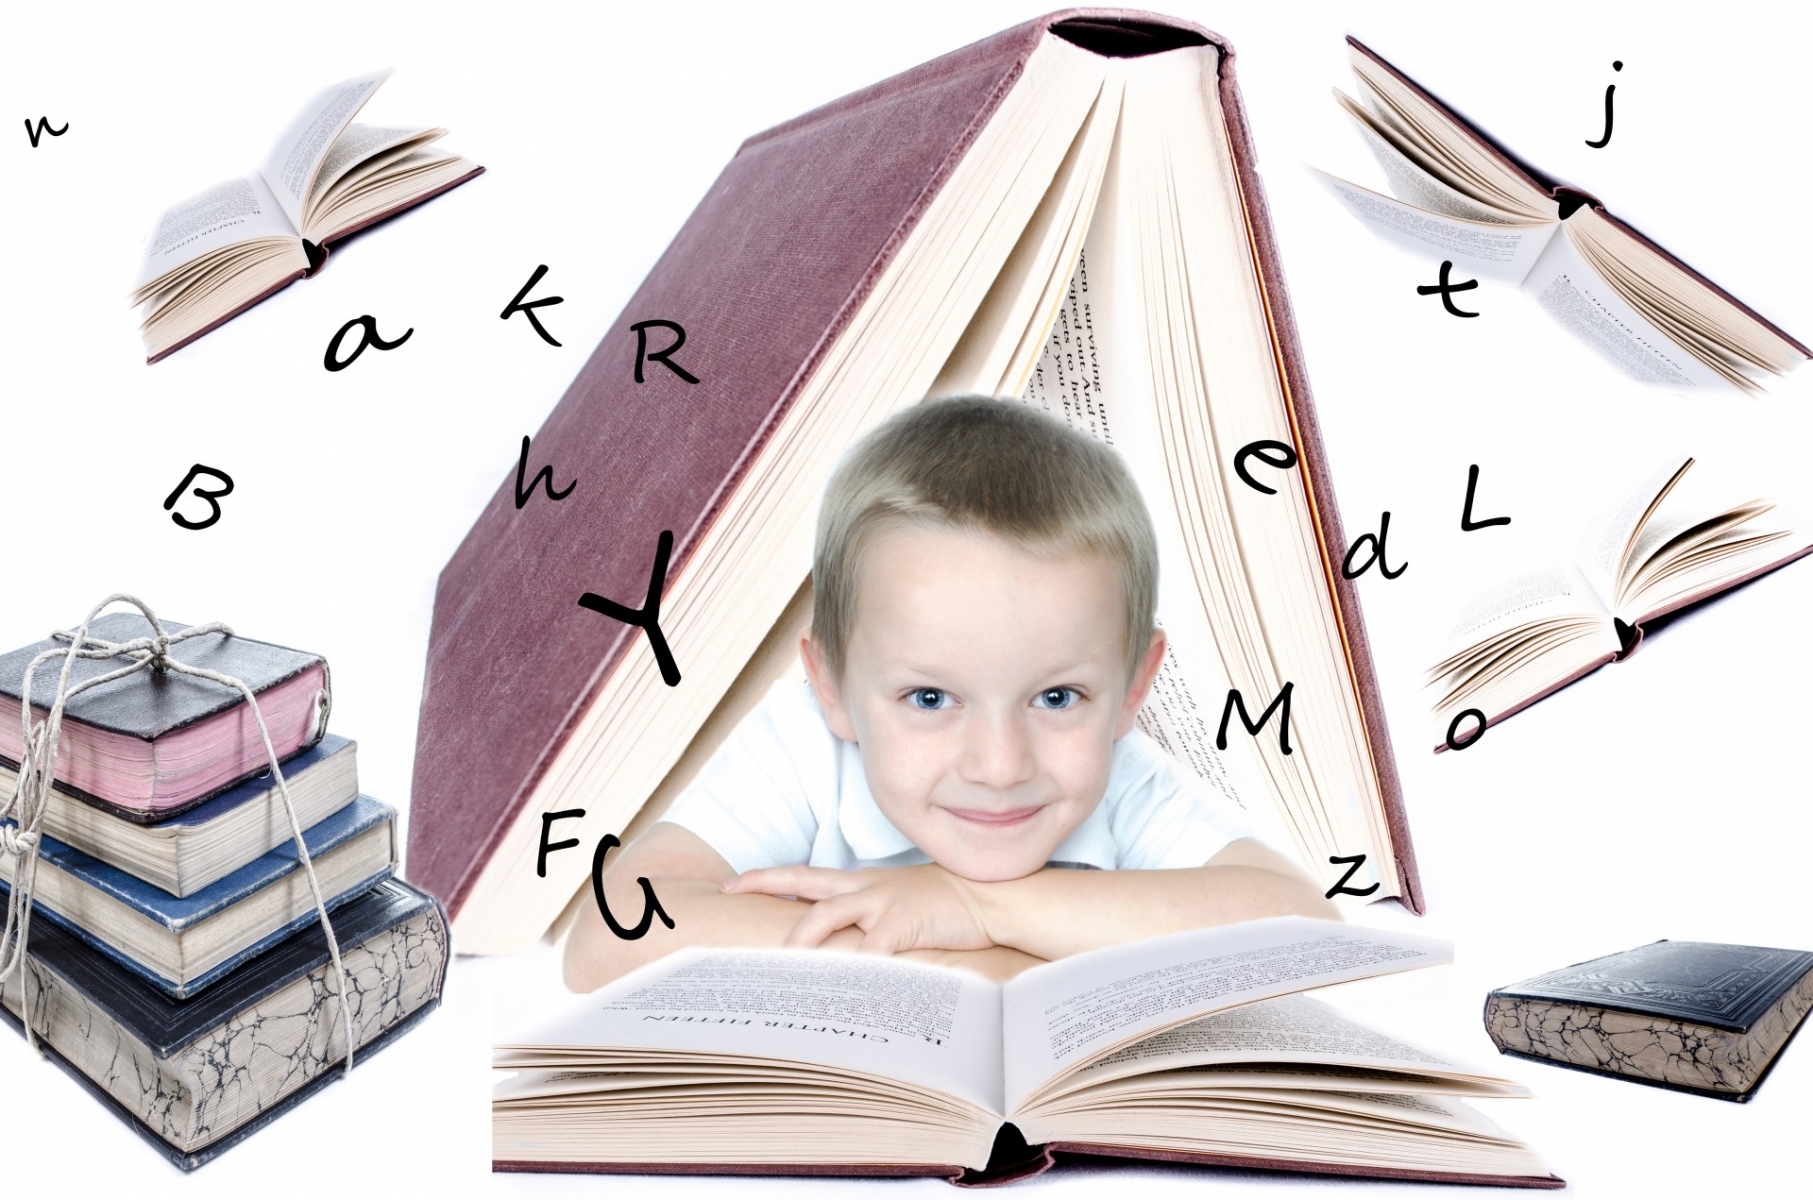 Có nhiều khía cạnh của ngôn ngữ mà trẻ em sẽ tiếp thu nhanh hơn người lớn